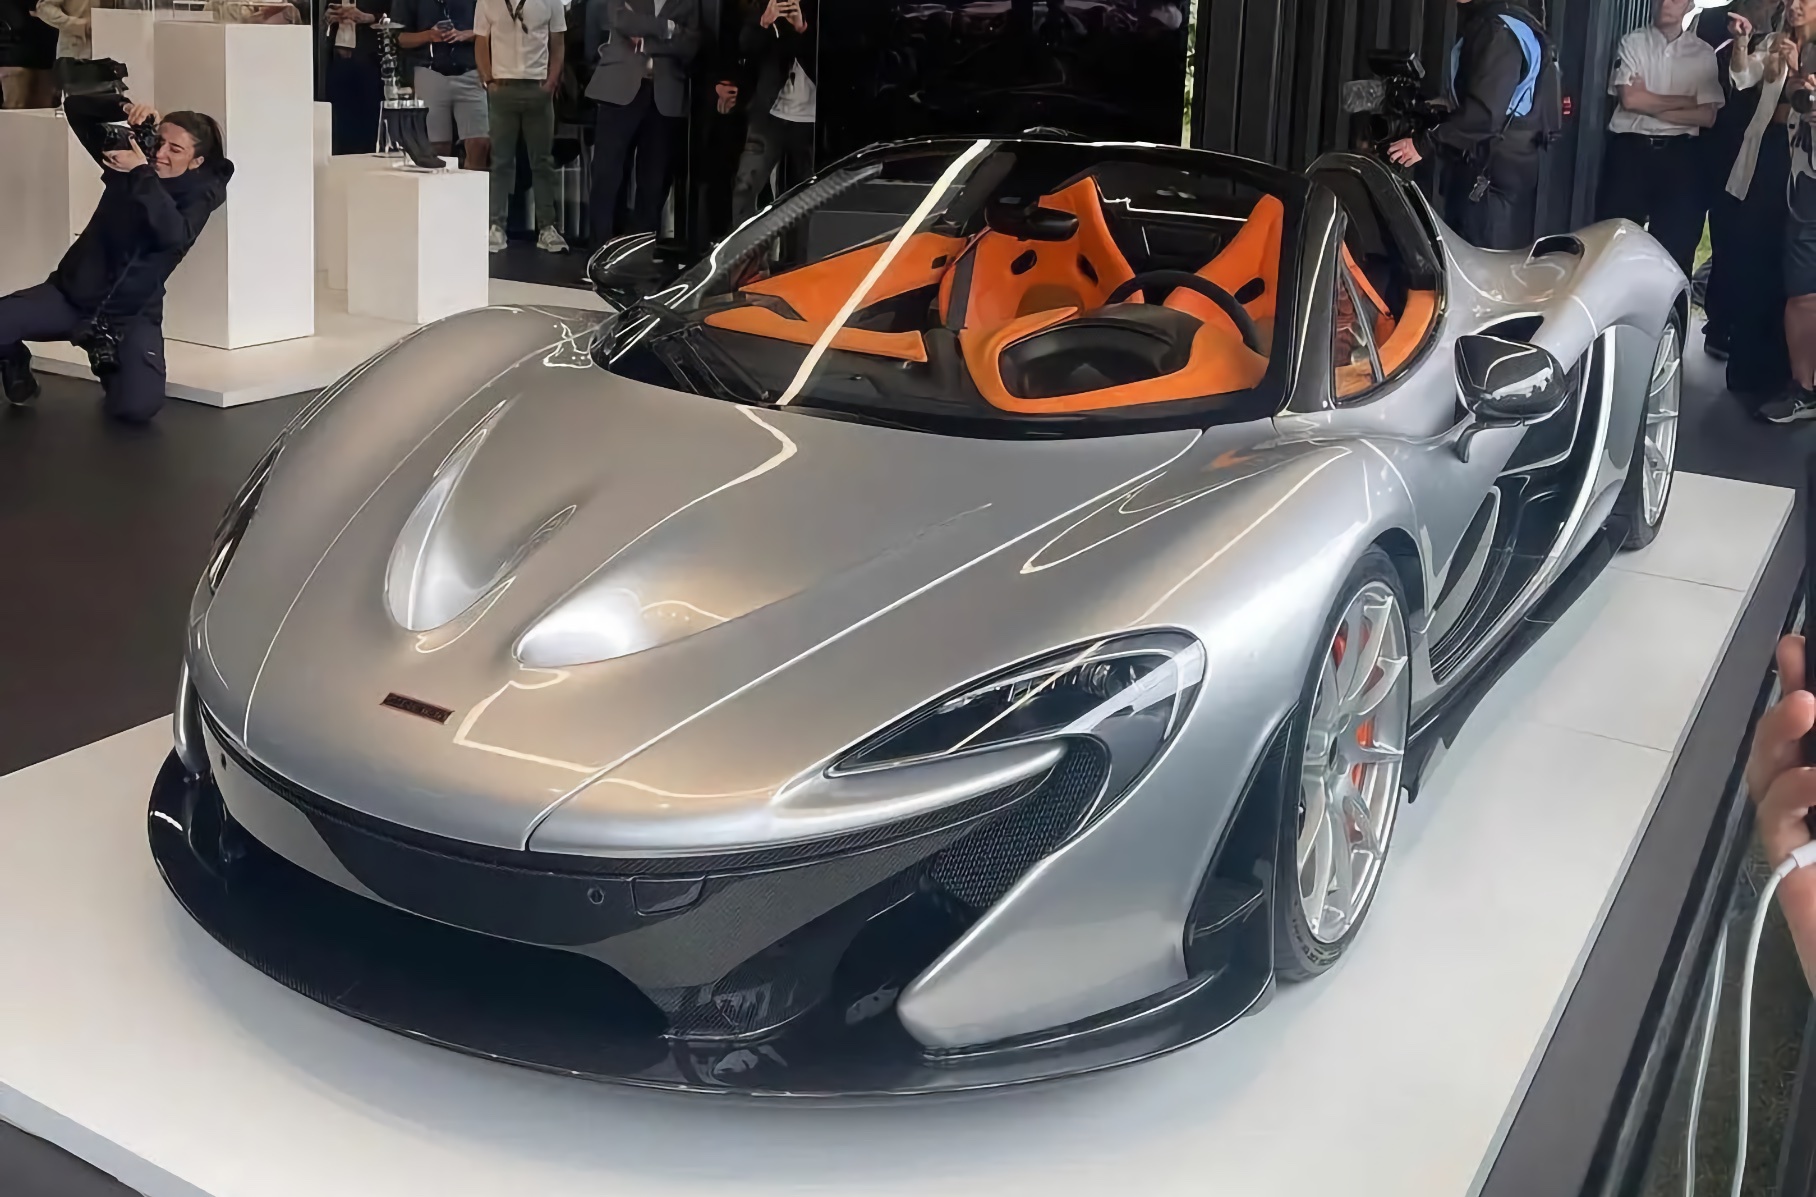 Супергибрид McLaren P1 получит версию без крыши